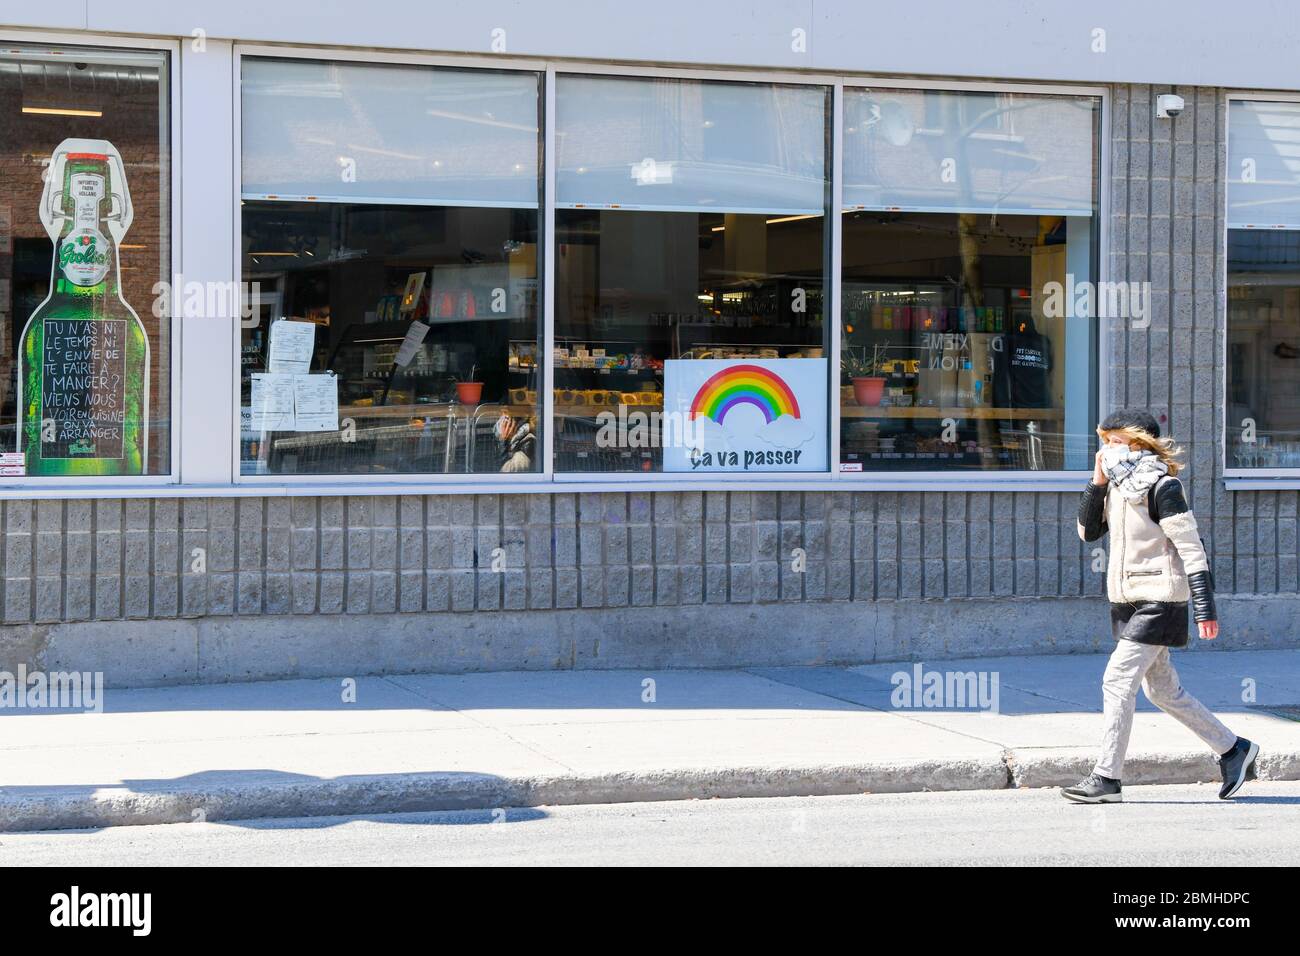 Persona che indossa una maschera protettiva e una sciarpa che cammina davanti ad un negozio con un covid 19 arcobaleno di speranza poster su di esso (il poster dice in francese: Passerà) , Montreal Canada Foto Stock